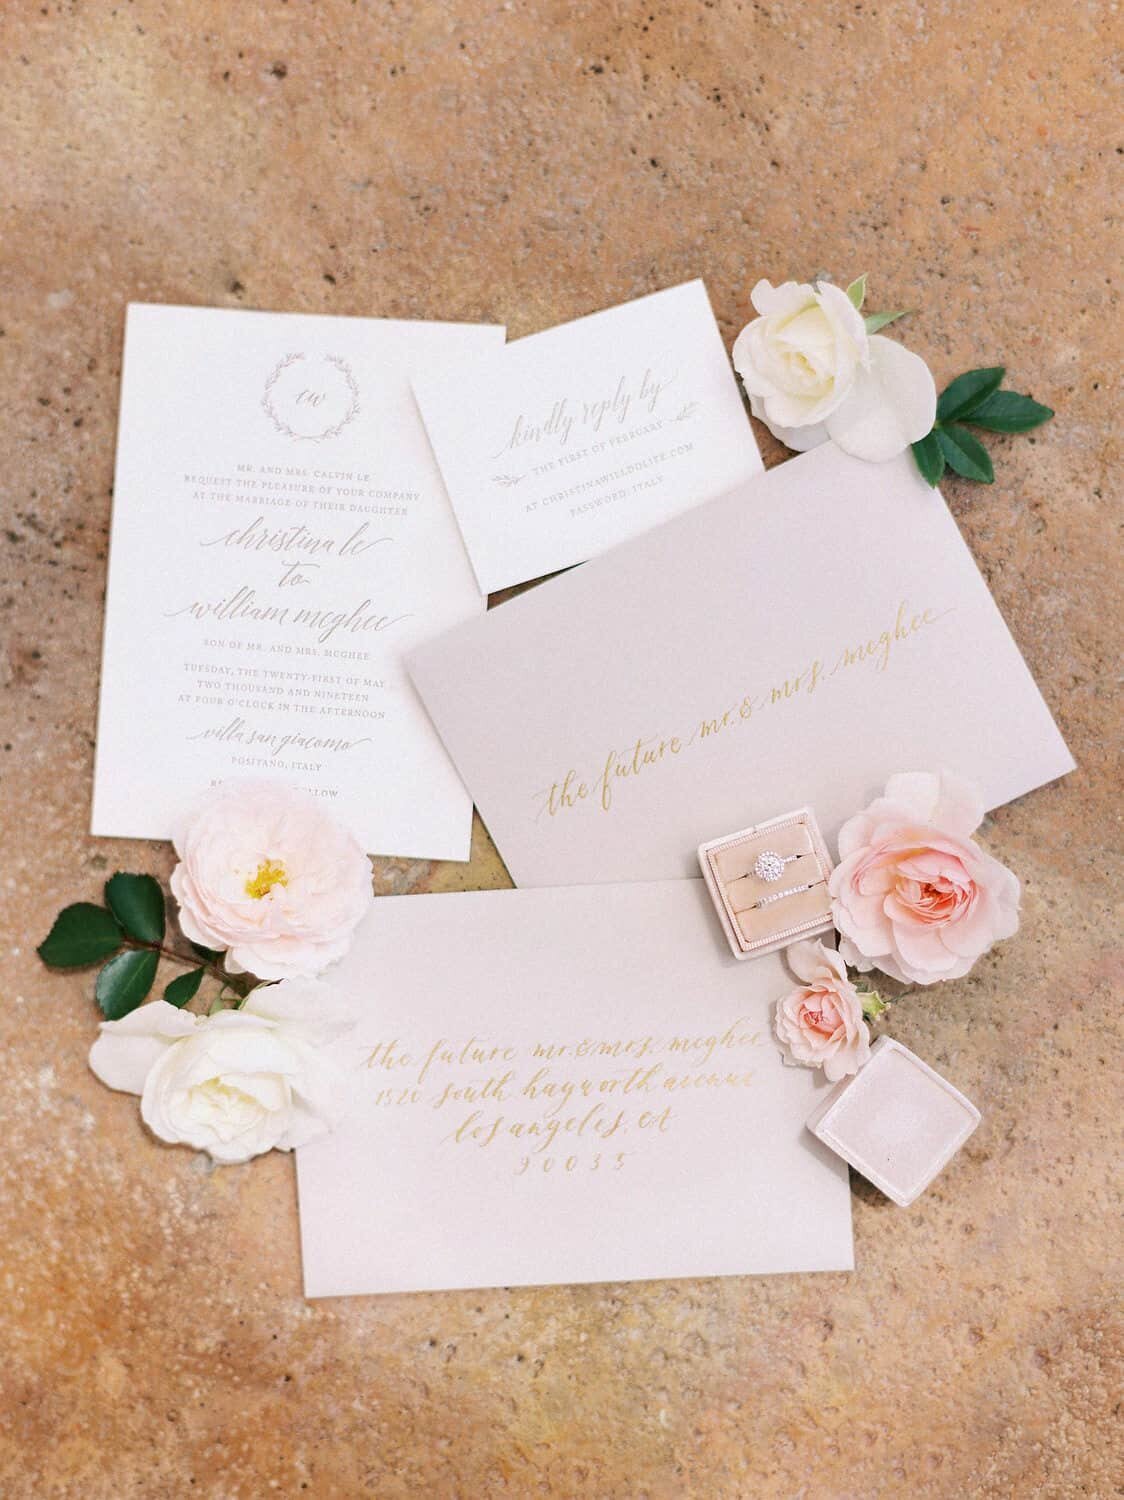 Positano-wedding-villa-San-Giacomo-stationary-invitations-by-Julia-Kaptelova-Photography-187